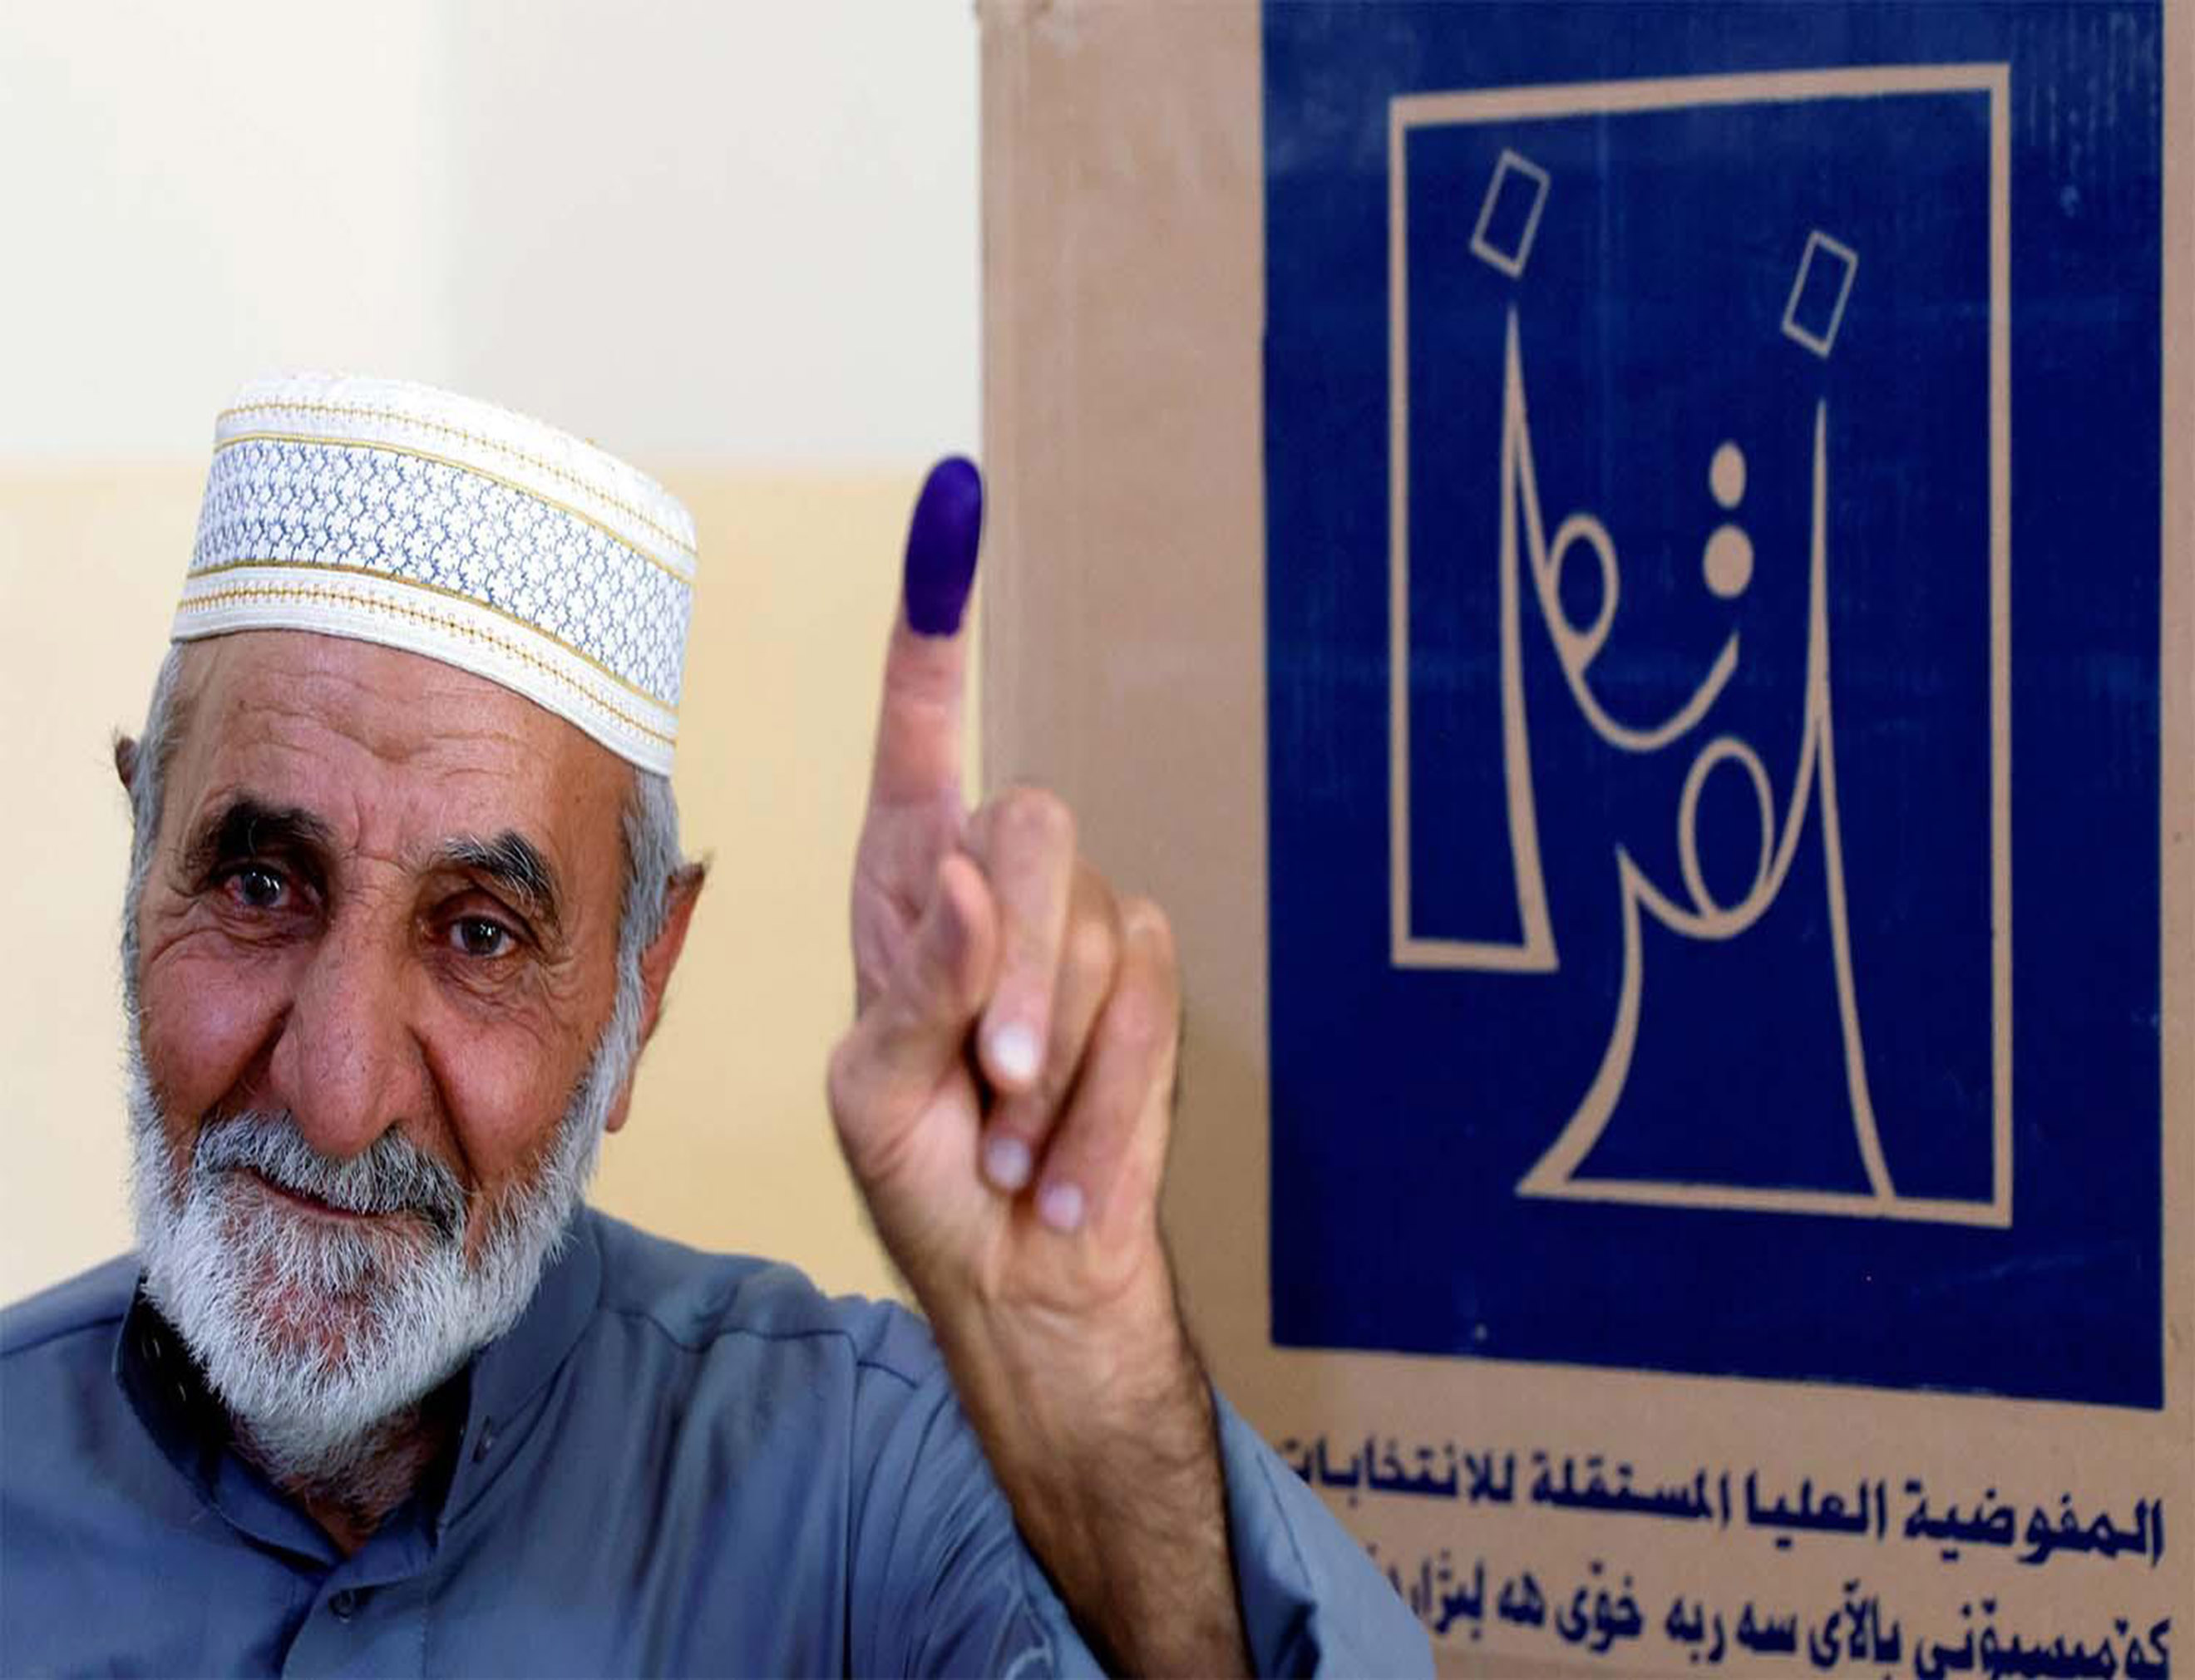 Les Elections Législatives en Irak se sont Déroulées dans le Calme